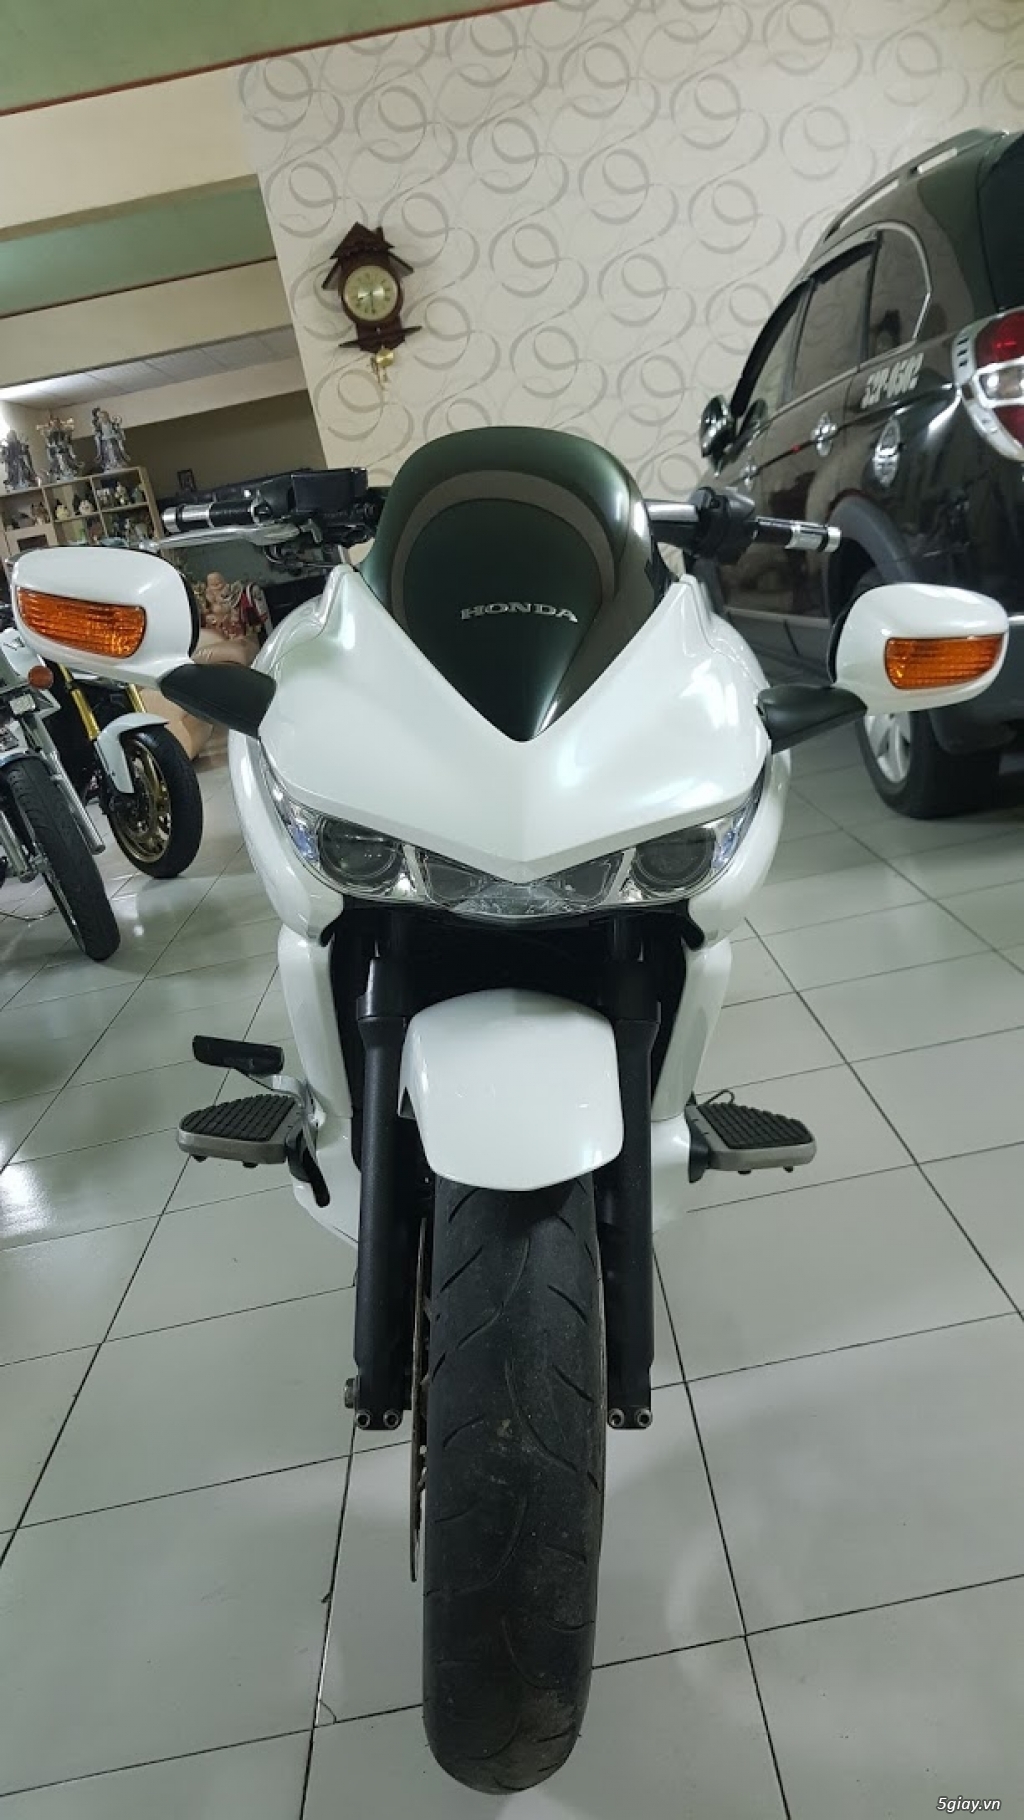 Khác  Bán Honda DN01 Full ABS HiSS odo 19k Saigon số đẹp Nguyên zin   Chợ Moto  Mua bán rao vặt xe moto pkl xe côn tay moto phân khối